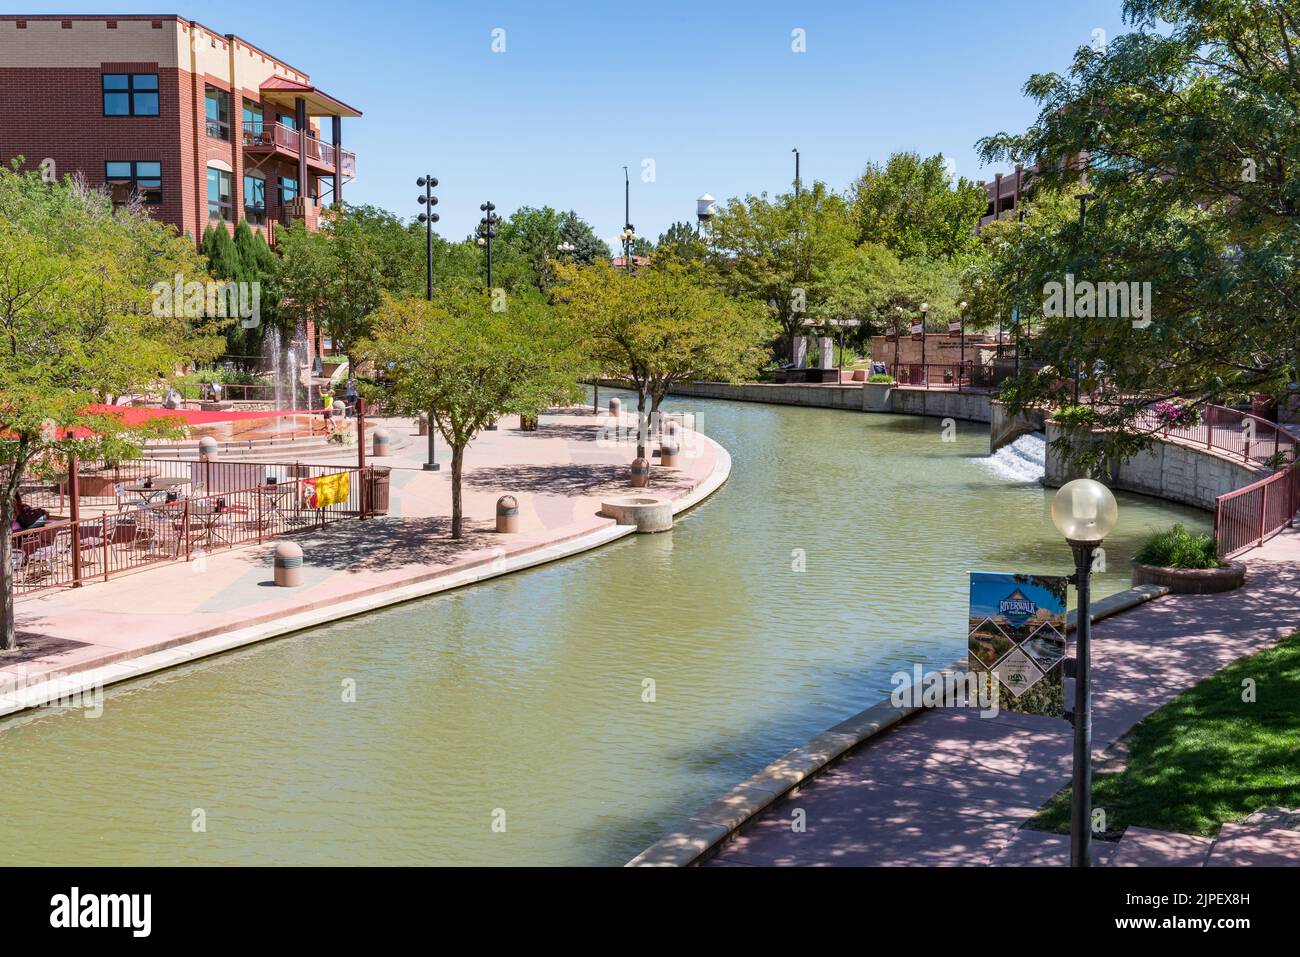 Pueblo, Colorado - 12 août 2022 : la promenade le long de la rivière Arkansas à Pueblo, Colorado, est un excellent exemple de revitalisation urbaine. Banque D'Images